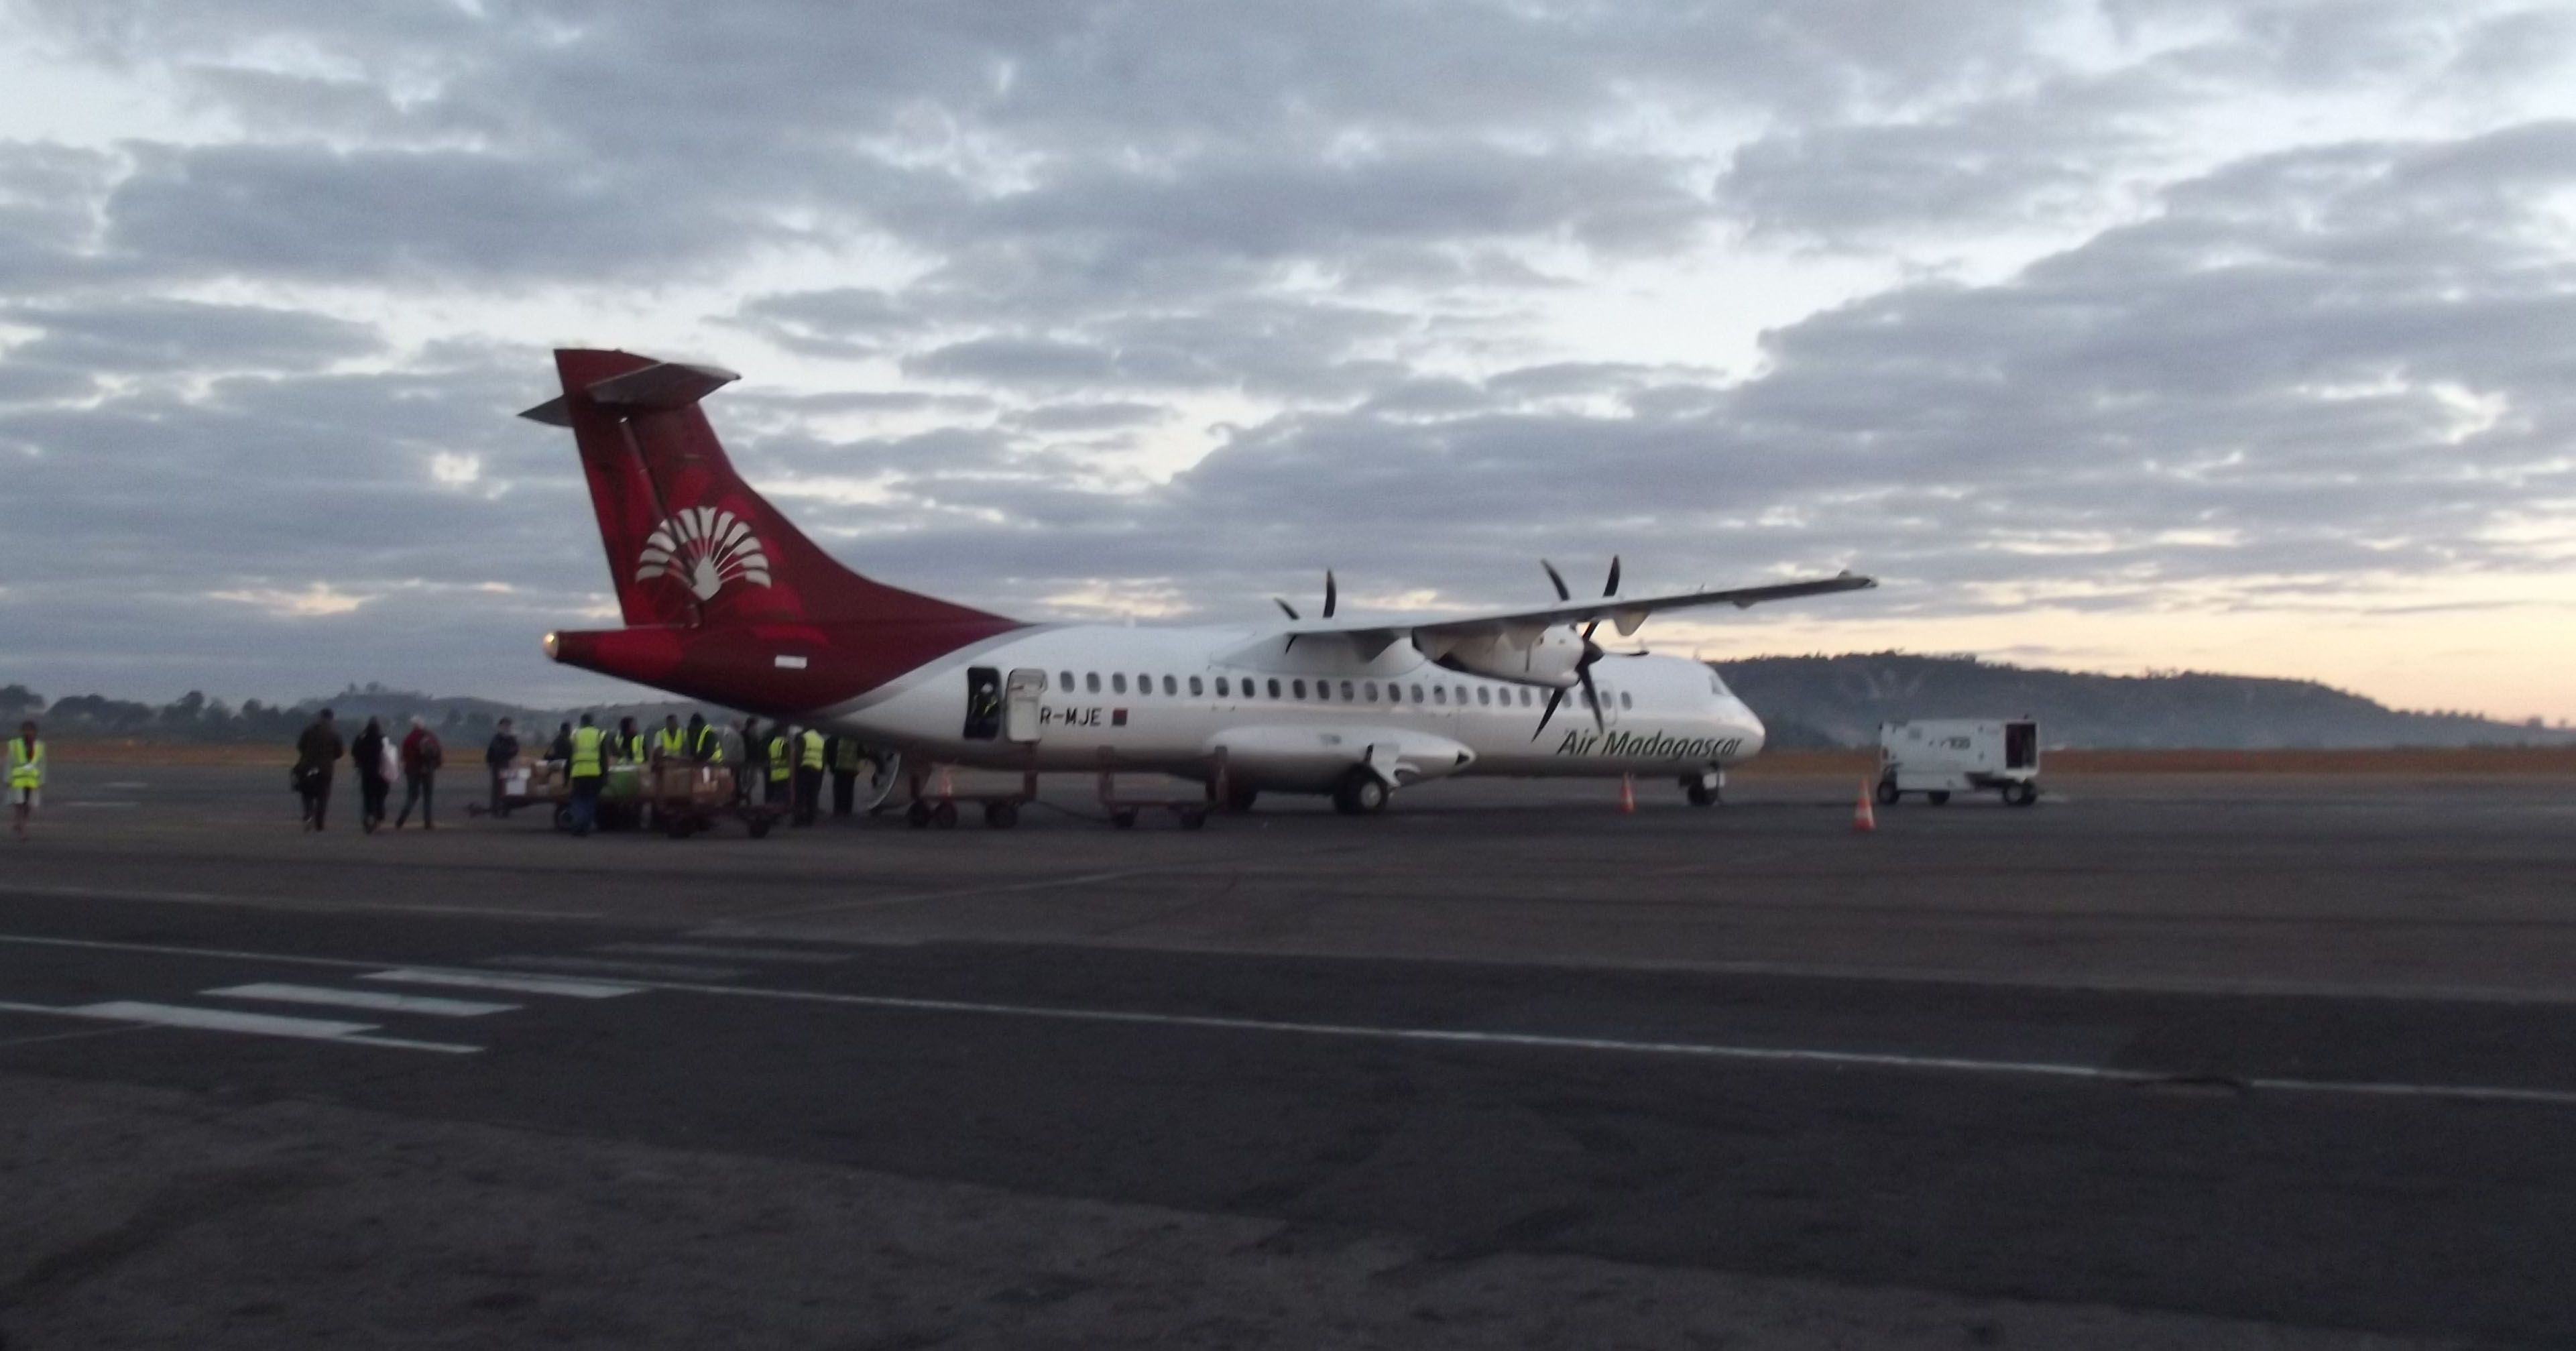 Air Madagascar ATR plane